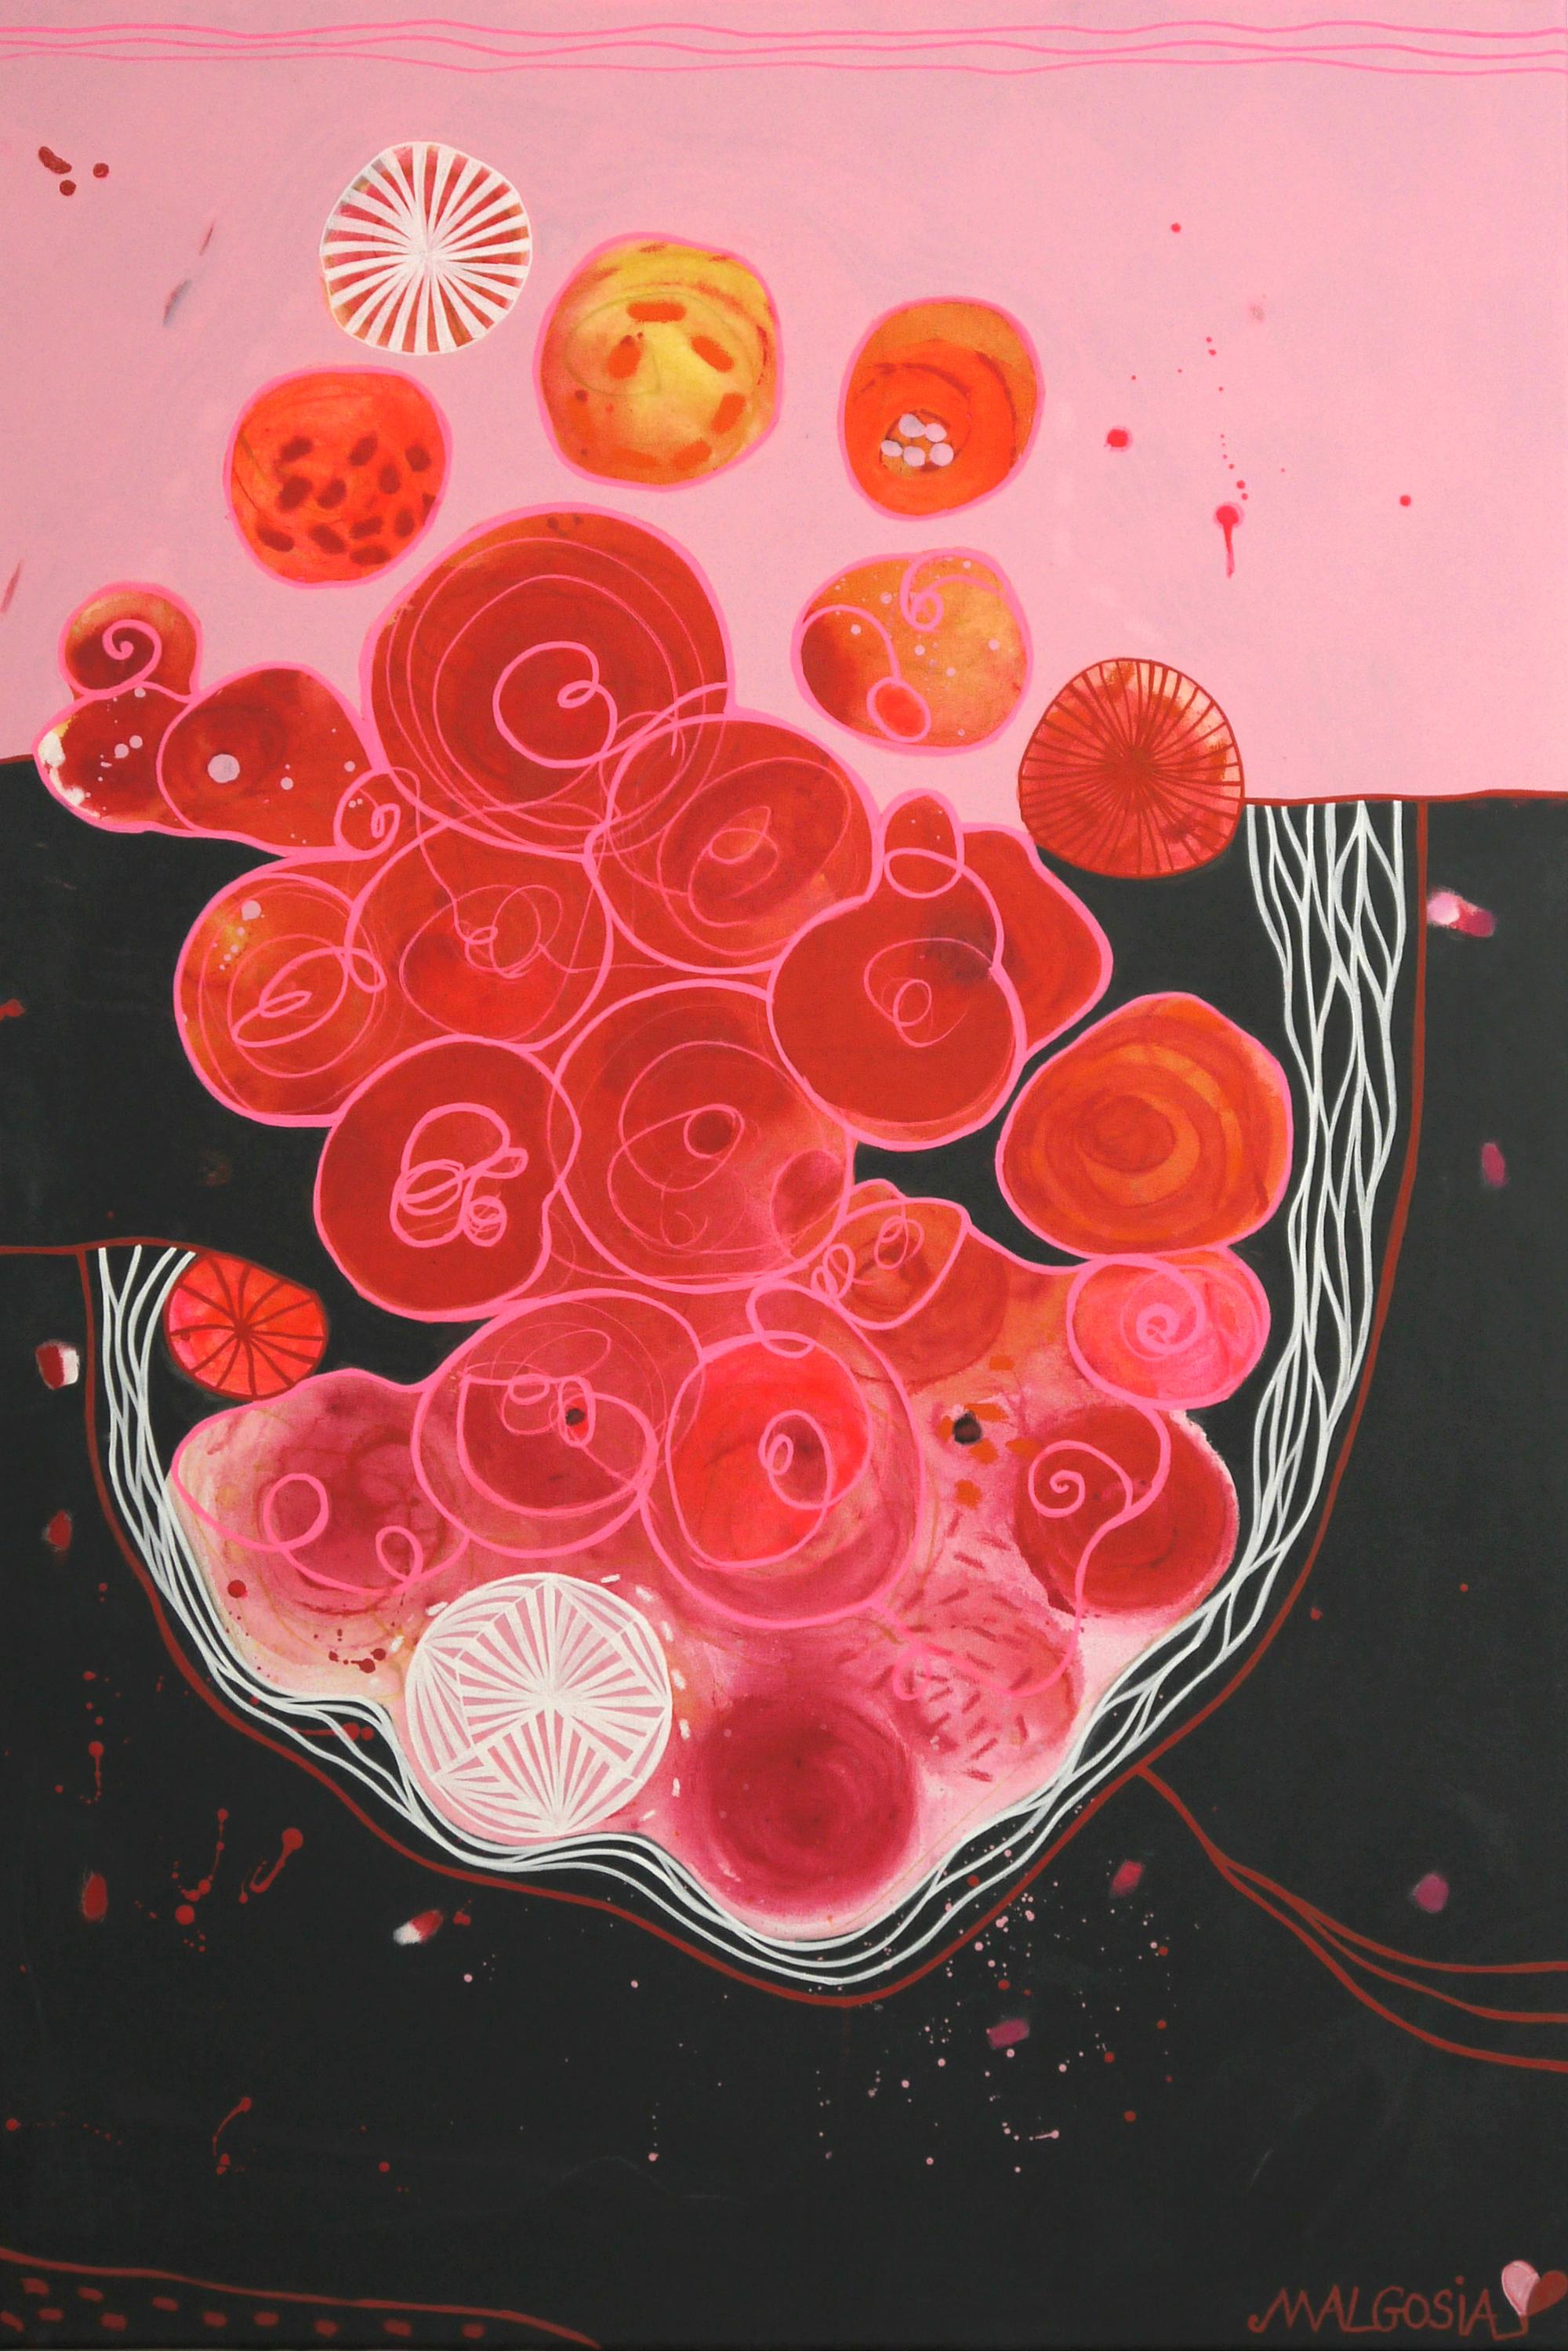 Blood Love Diptych  - Painting by Malgosia Kiernozycka